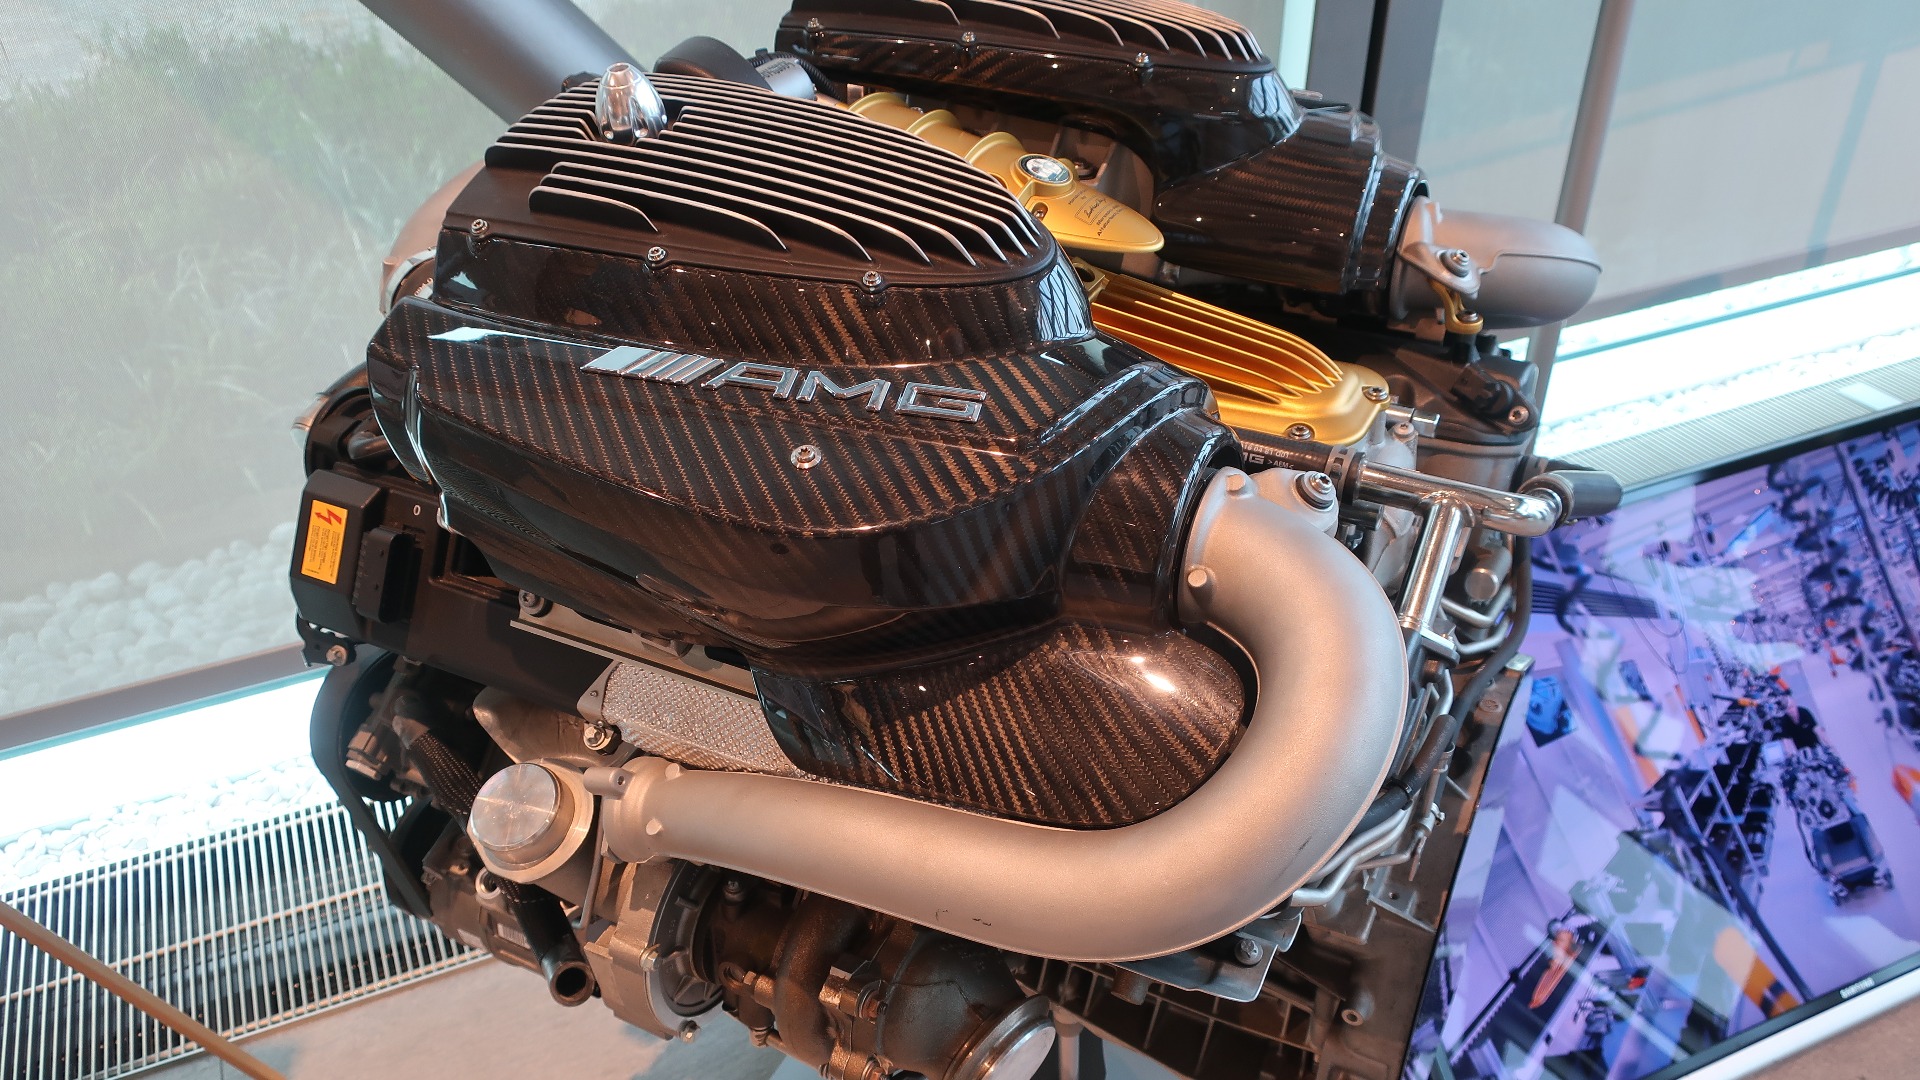 Flere av de mektige AMG-motorene står også utstilt rundt omkring.